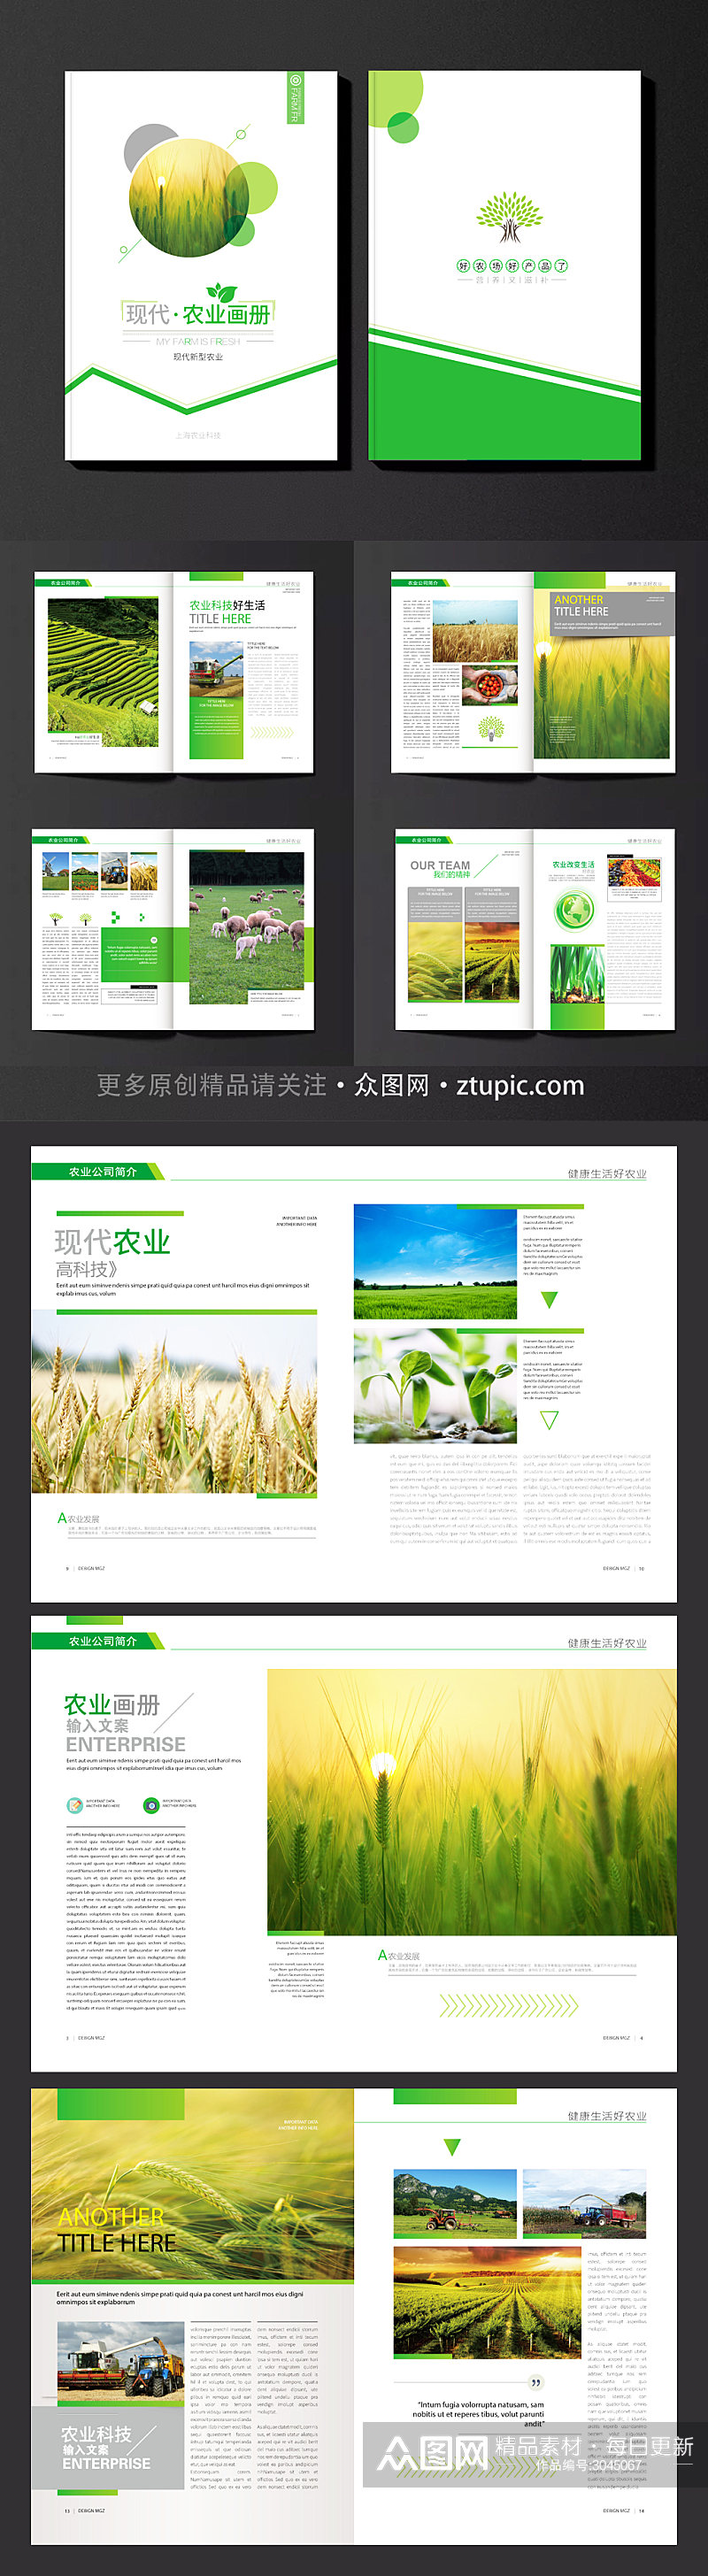 绿色农业画册宣传册素材